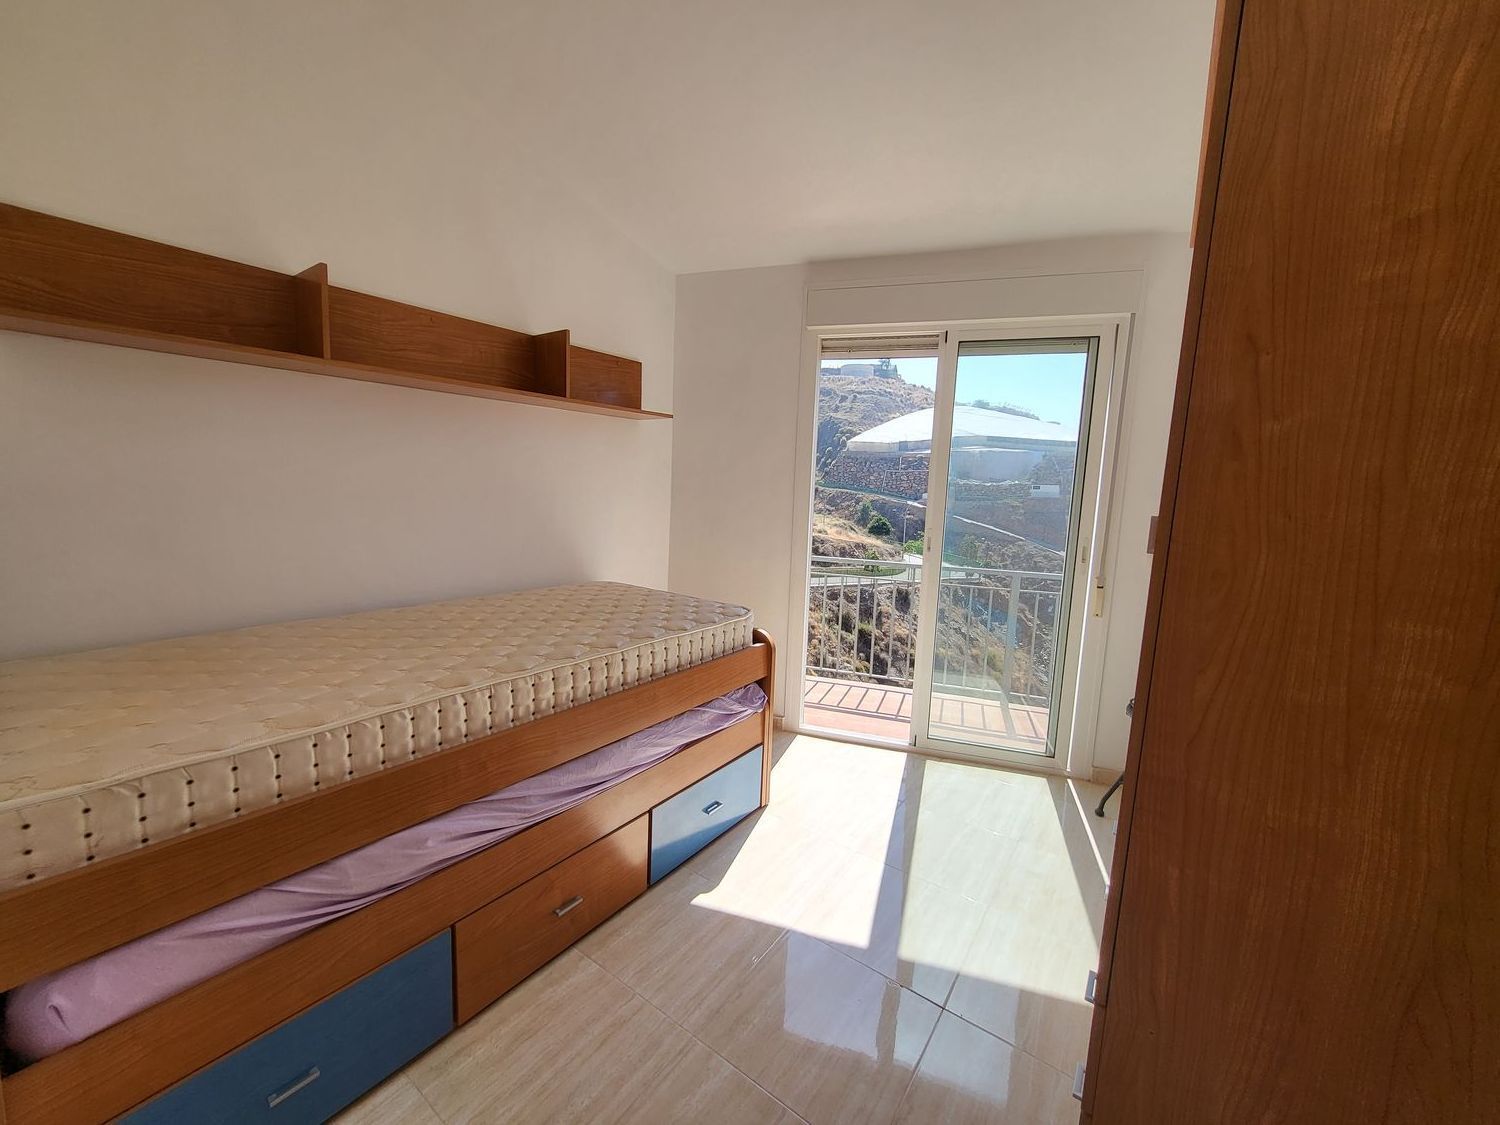 Área de Albuñol, Granada, 3 Bedrooms Bedrooms, ,2 BathroomsBathrooms,House,For Sale